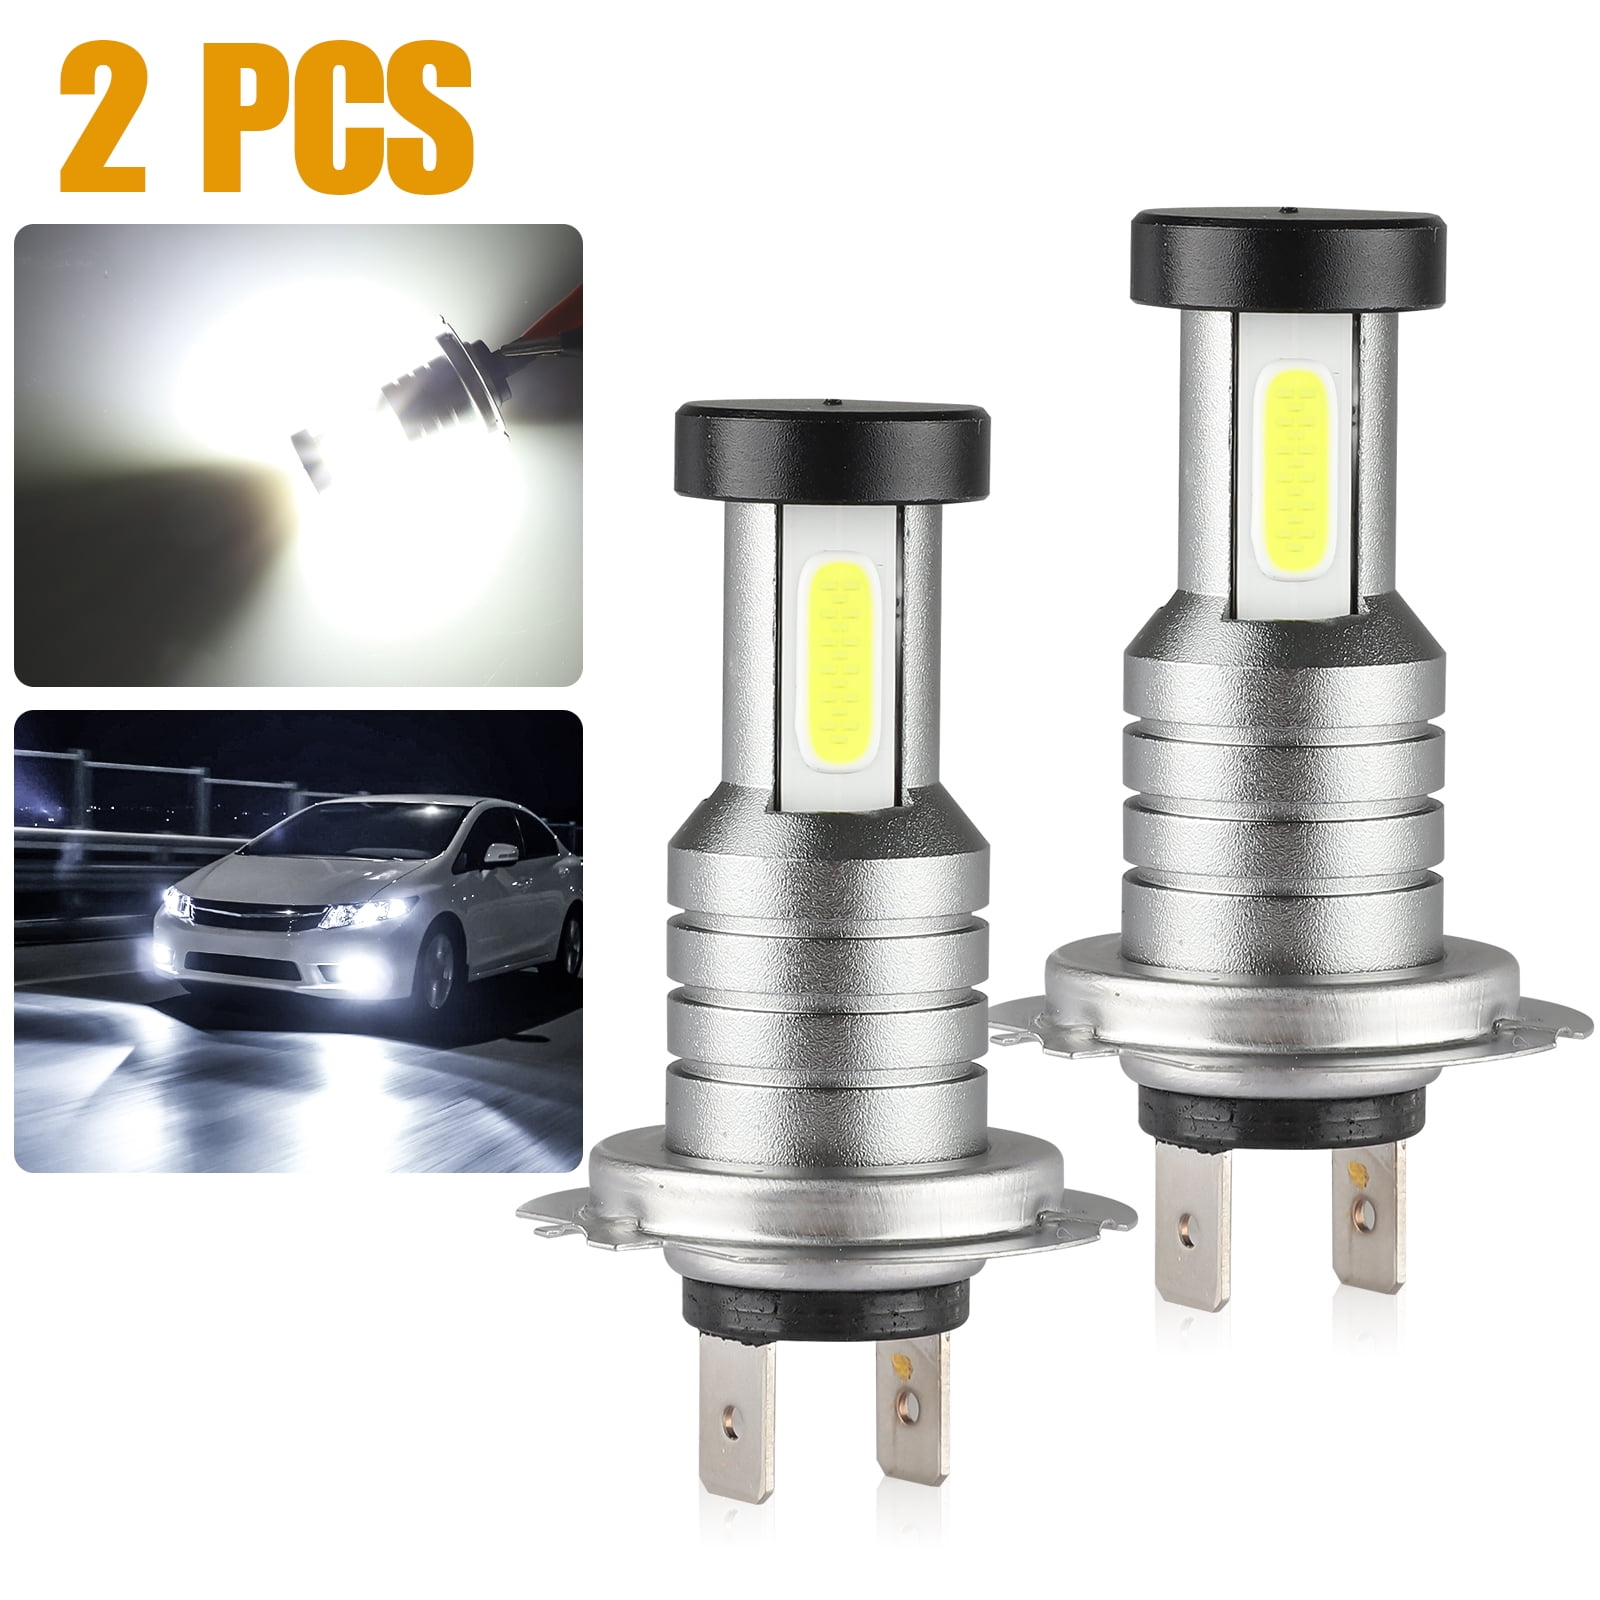 2pcs H4 H4 Combo LED Headlight Kit Bulb High Low Beam 110W 30000LM White 6000K